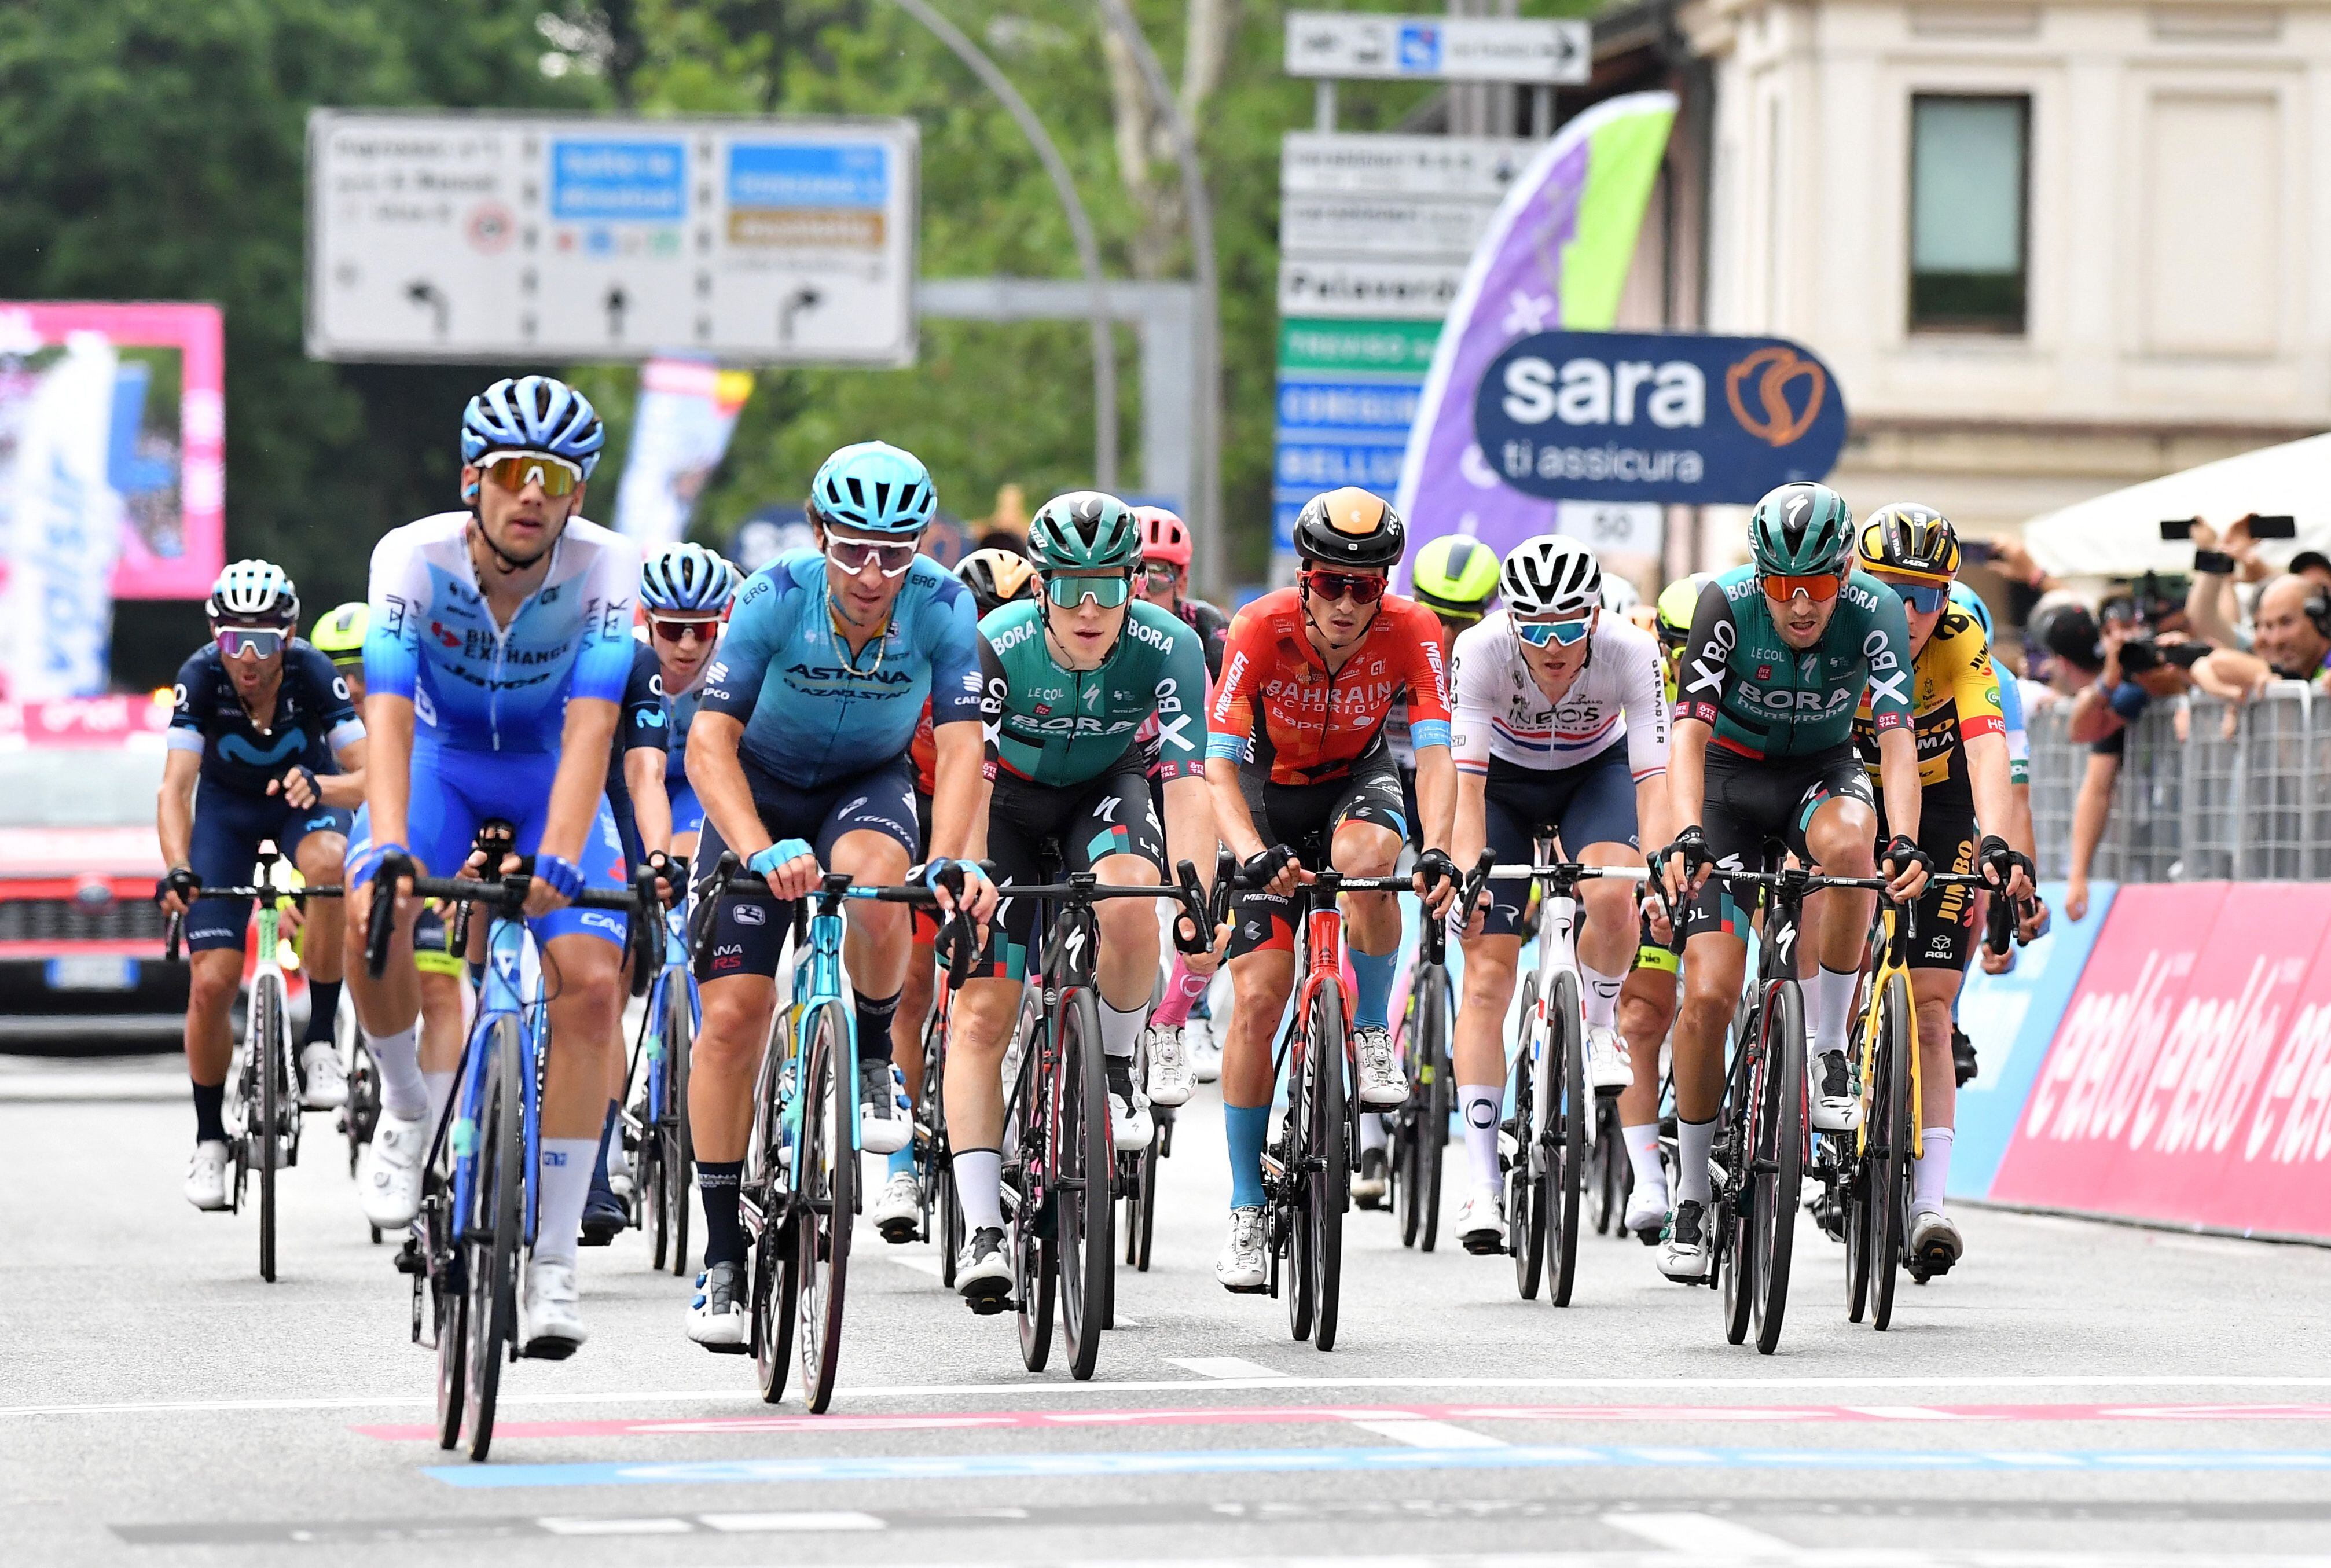 Ciclismo - Giro d'Italia - etapa 18 - Borgo Valsugana a Treviso, Italia - 26 de mayo de 2022 Vista general del pelotón cruzando la línea para terminar la etapa 18 REUTERS/Jennifer Lorenzini